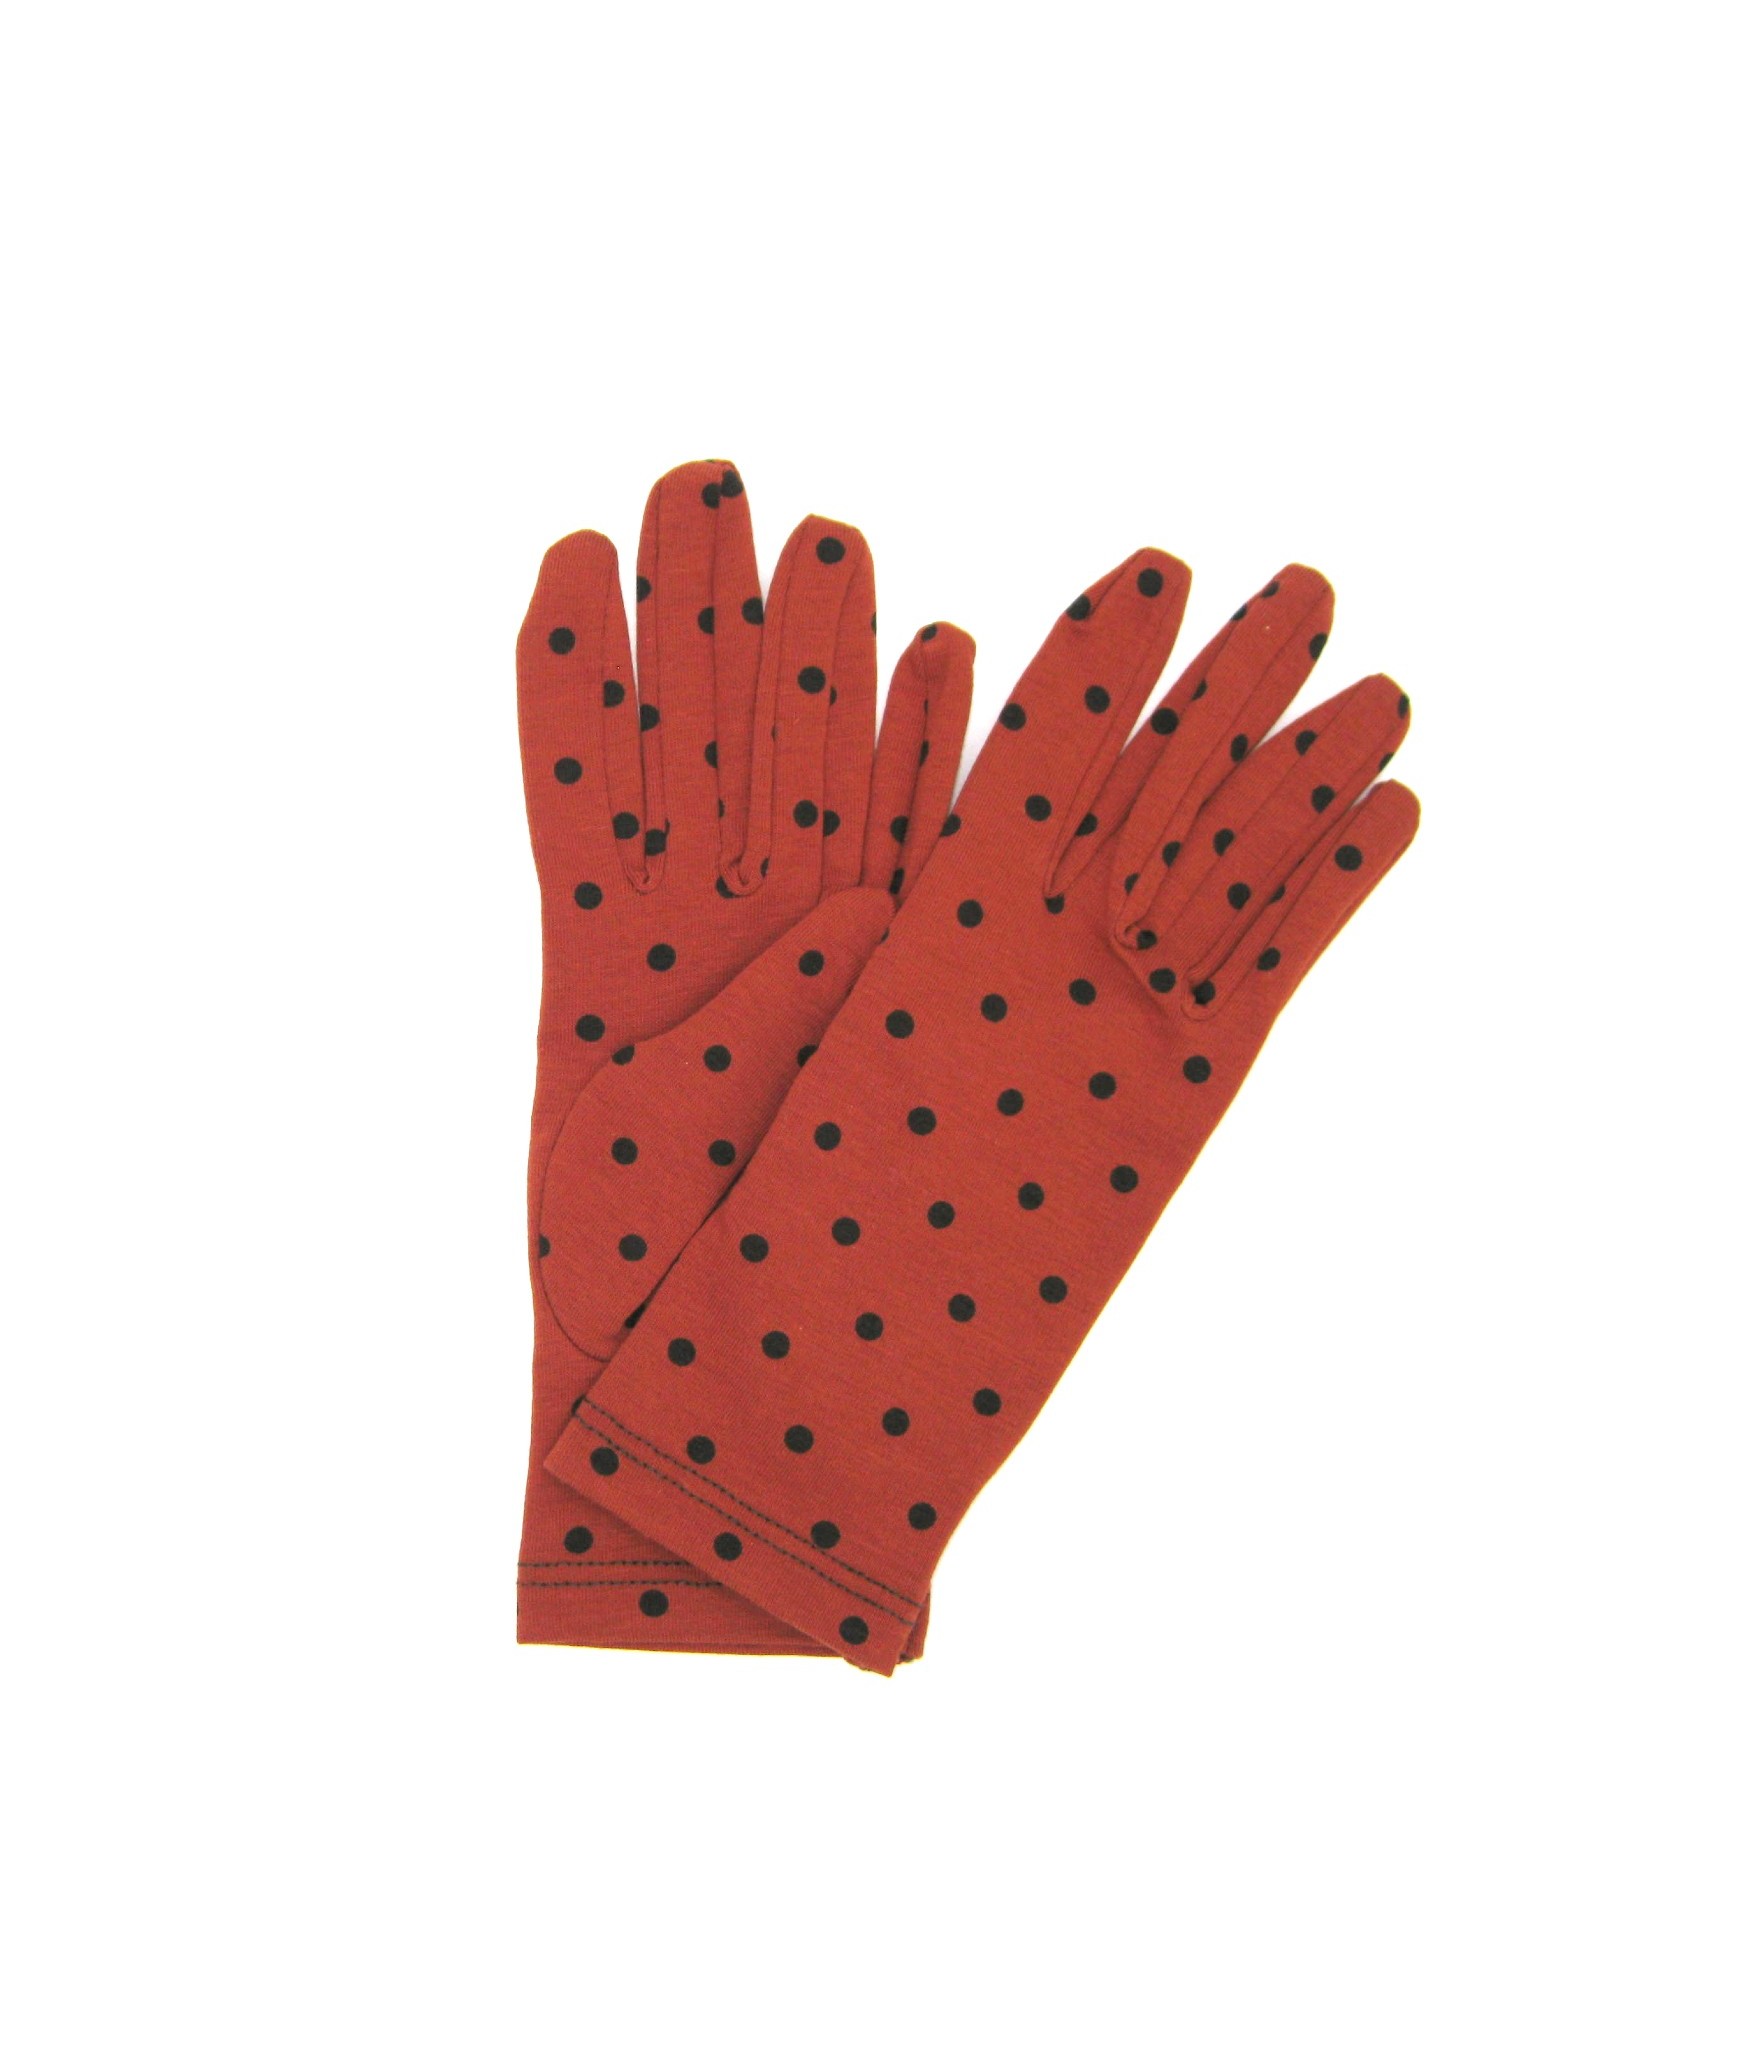 Damen Textil Baumwoll-handschuhe mit Tupfen Dunkel Orange/Pois